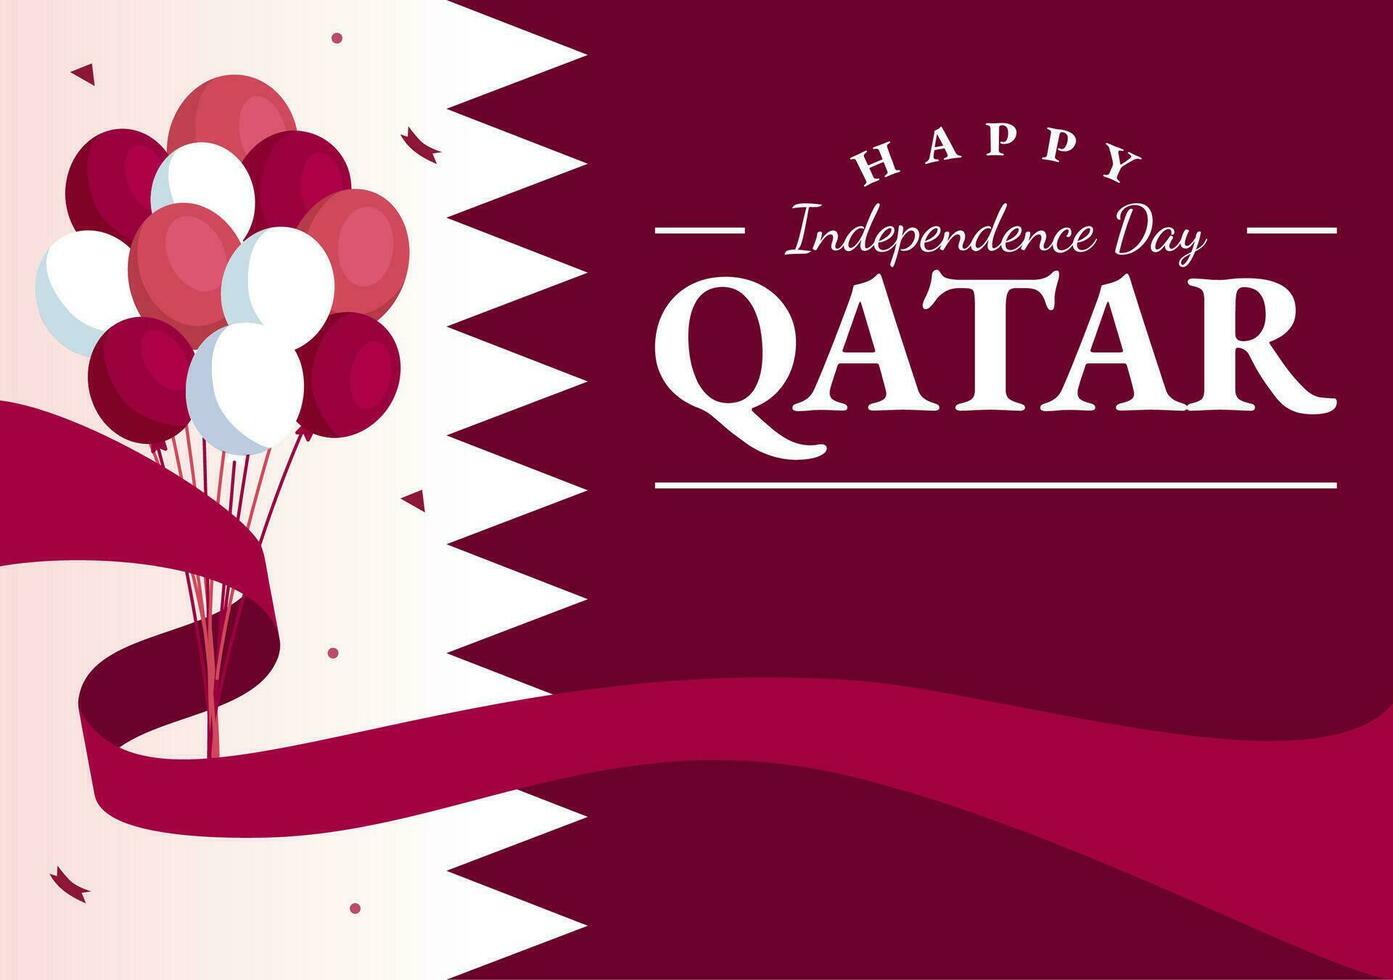 contento Katar independencia día vector ilustración en 3 septiembre con ondulación bandera antecedentes en plano dibujos animados mano dibujado aterrizaje página plantillas